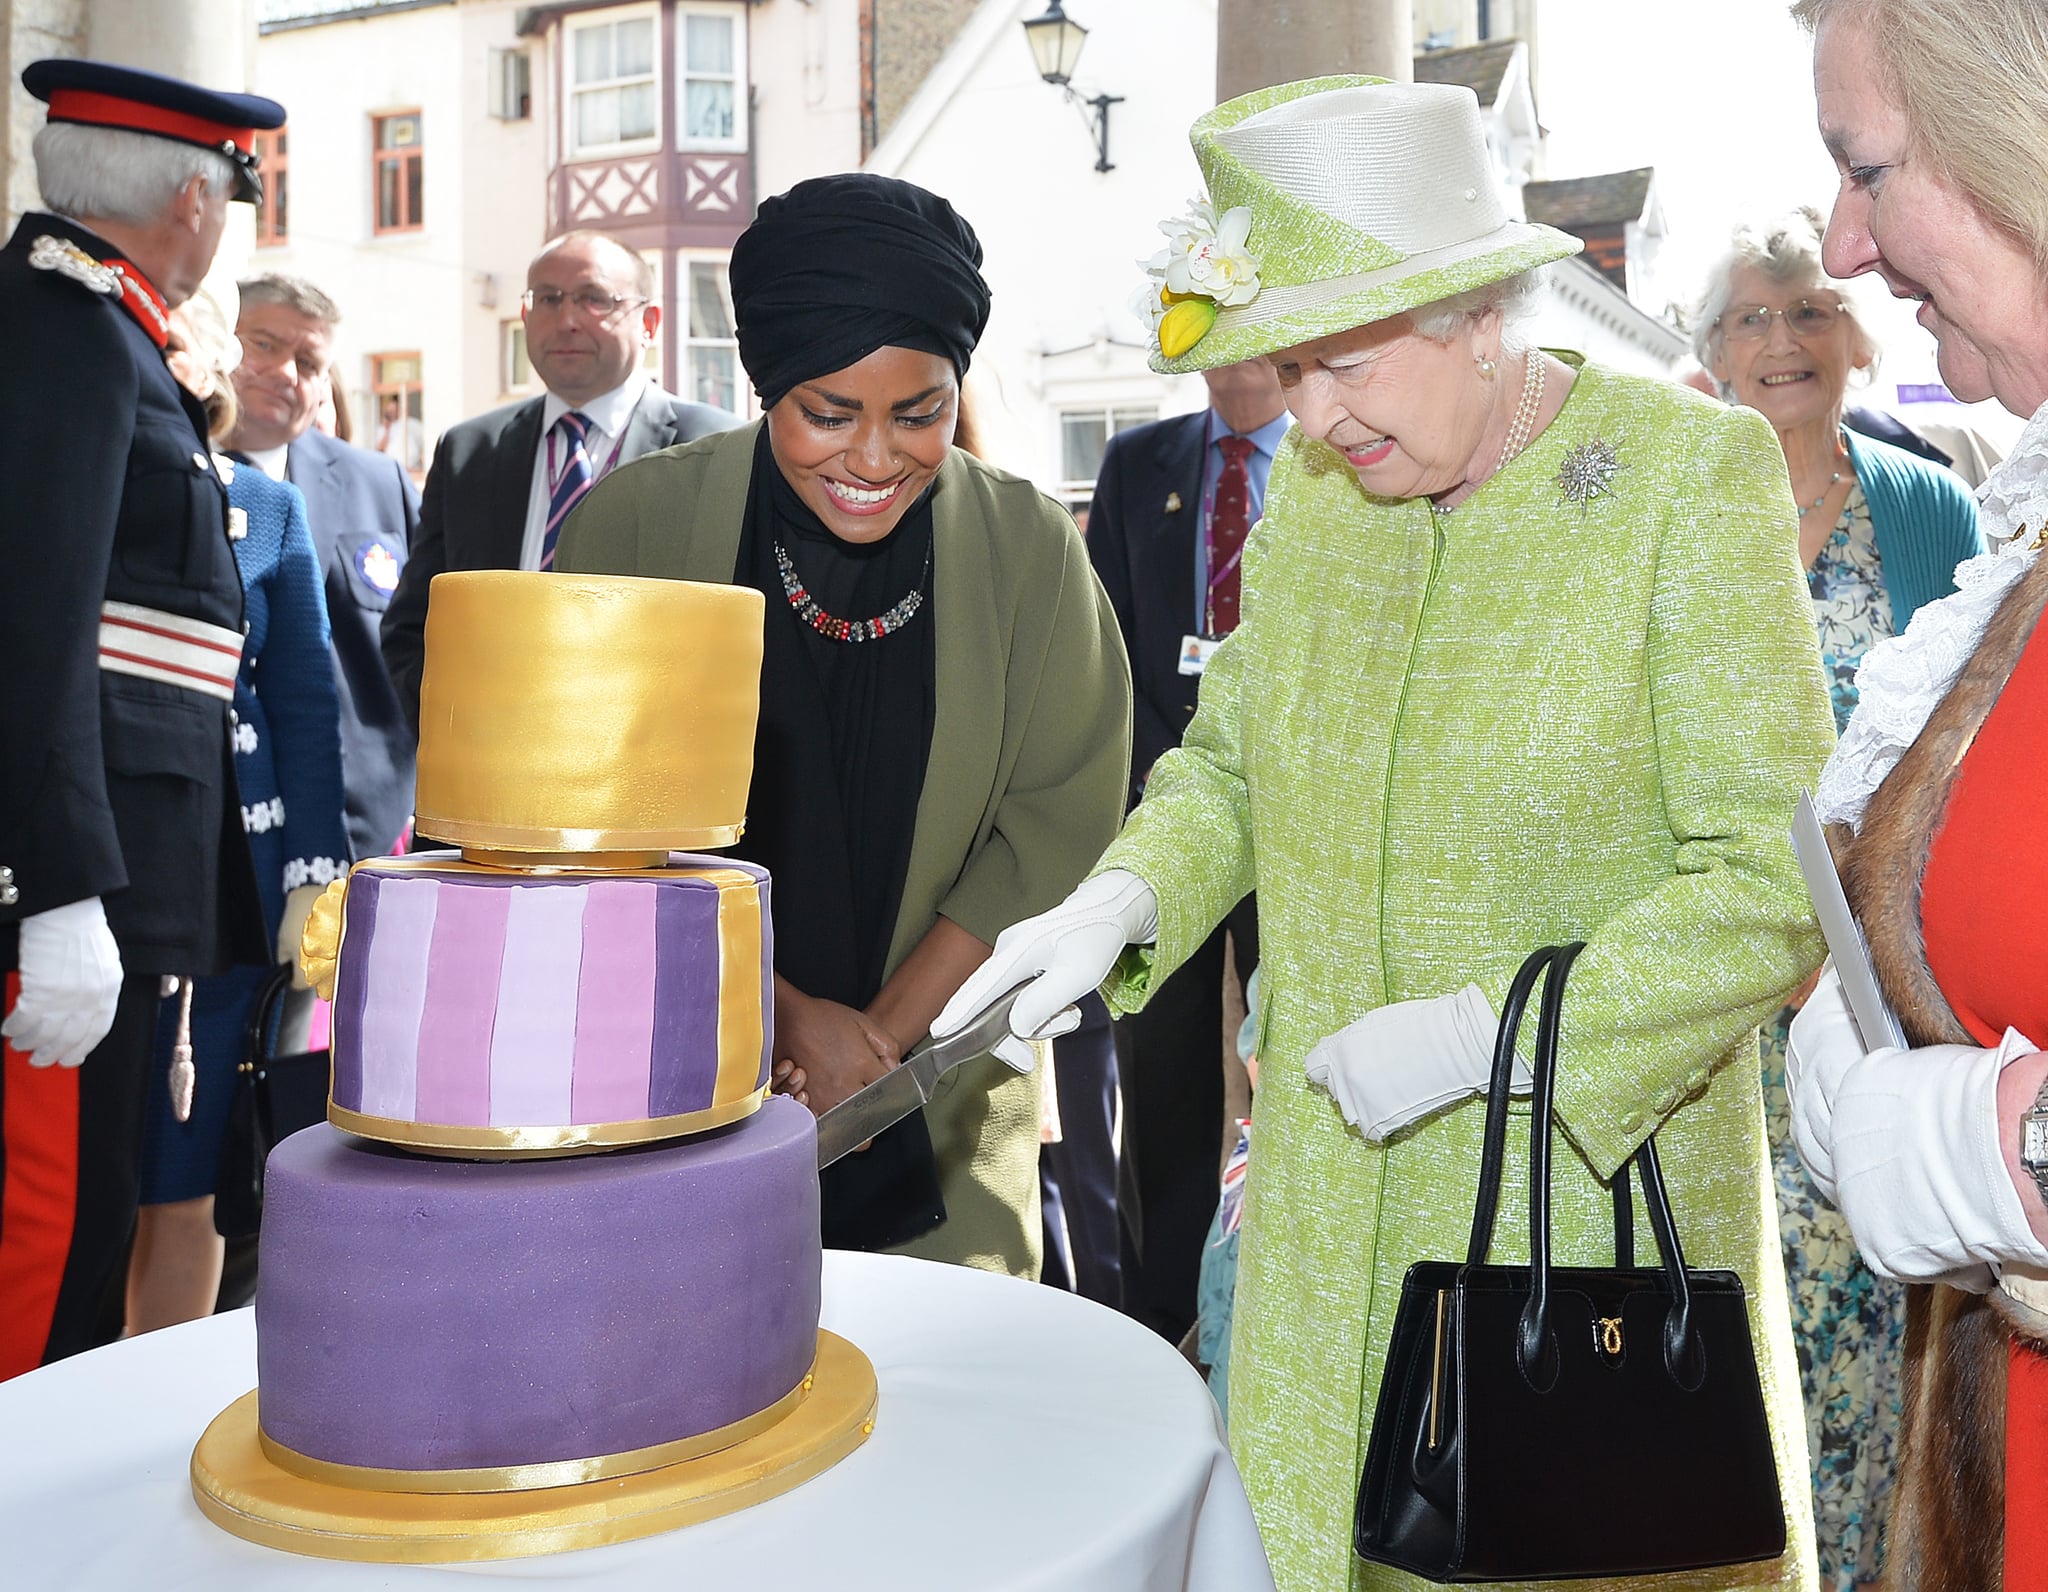 英国温莎——4月21日:2016年4月21日，英国女王伊丽莎白二世在90岁生日散步时，收到了英国烘焙大赛冠军Nadiya Hussain赠送的生日蛋糕。今天是英国女王伊丽莎白二世的90岁生日。女王和爱丁堡公爵将在温莎执行公务。(图片来源:John Stillwell - WPA Pool/Getty Images)